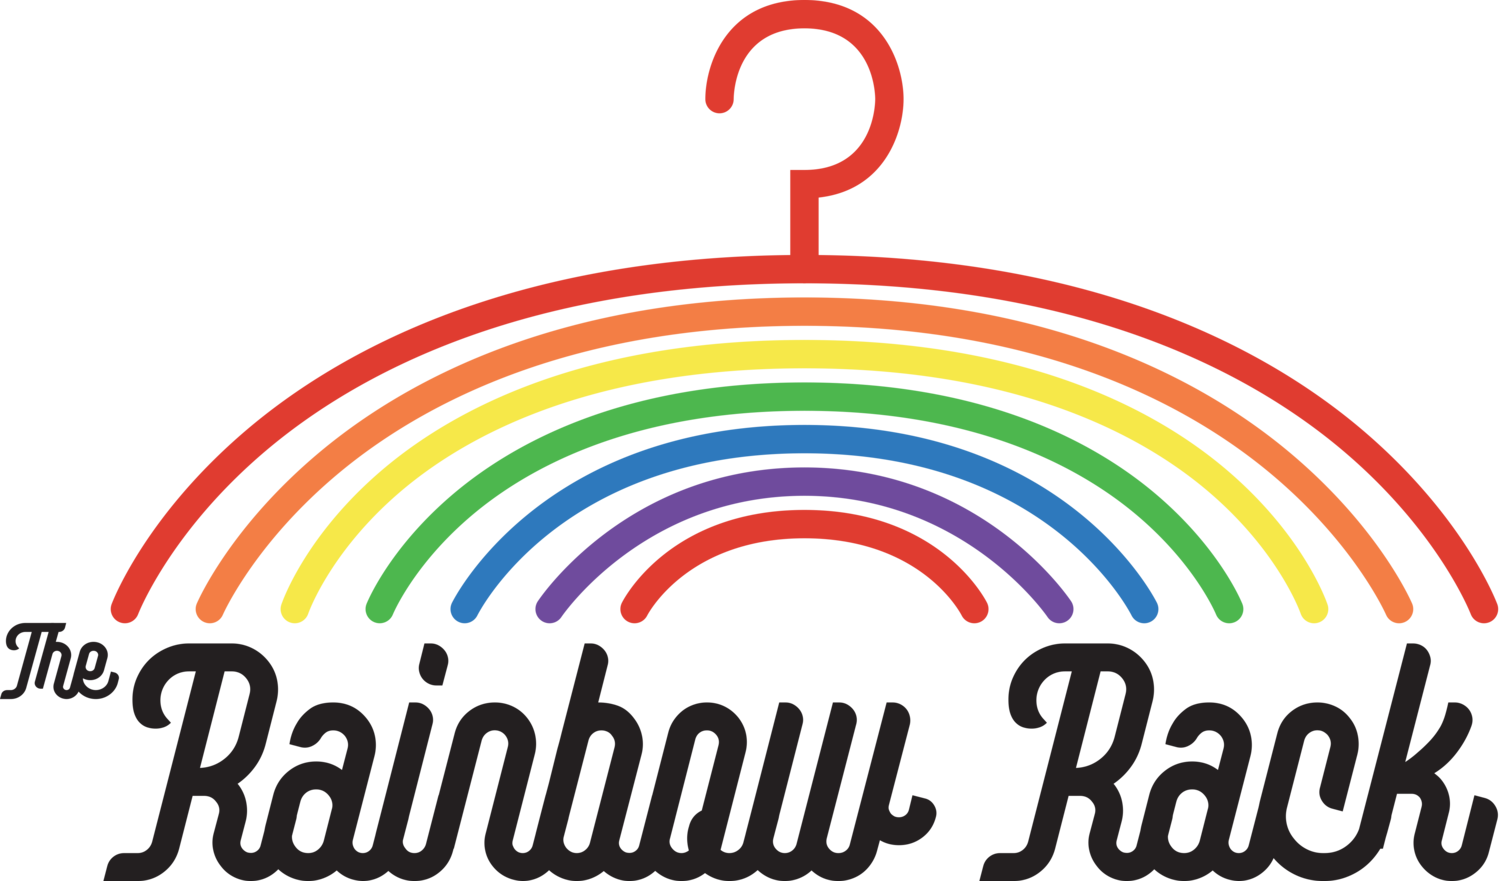 The Rainbow Rack